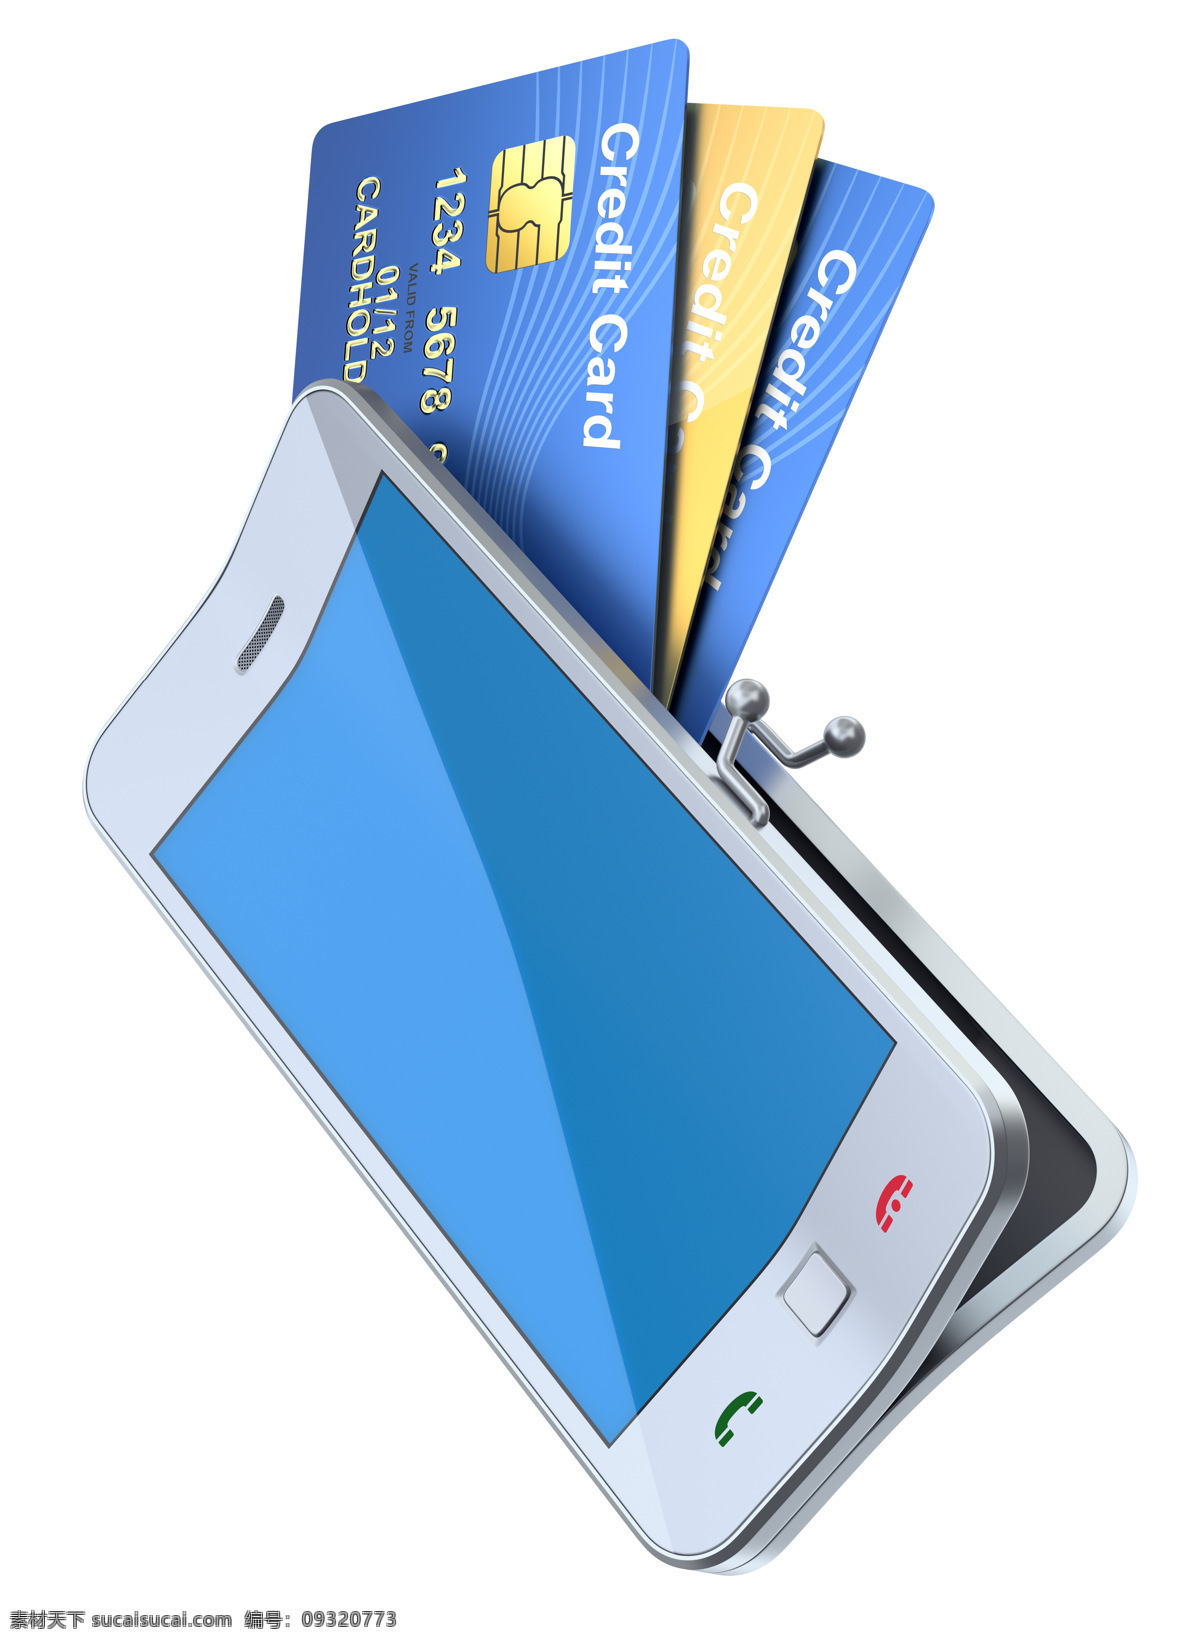 手机 银行卡 信用卡 智能手机 现代商务 商务金融